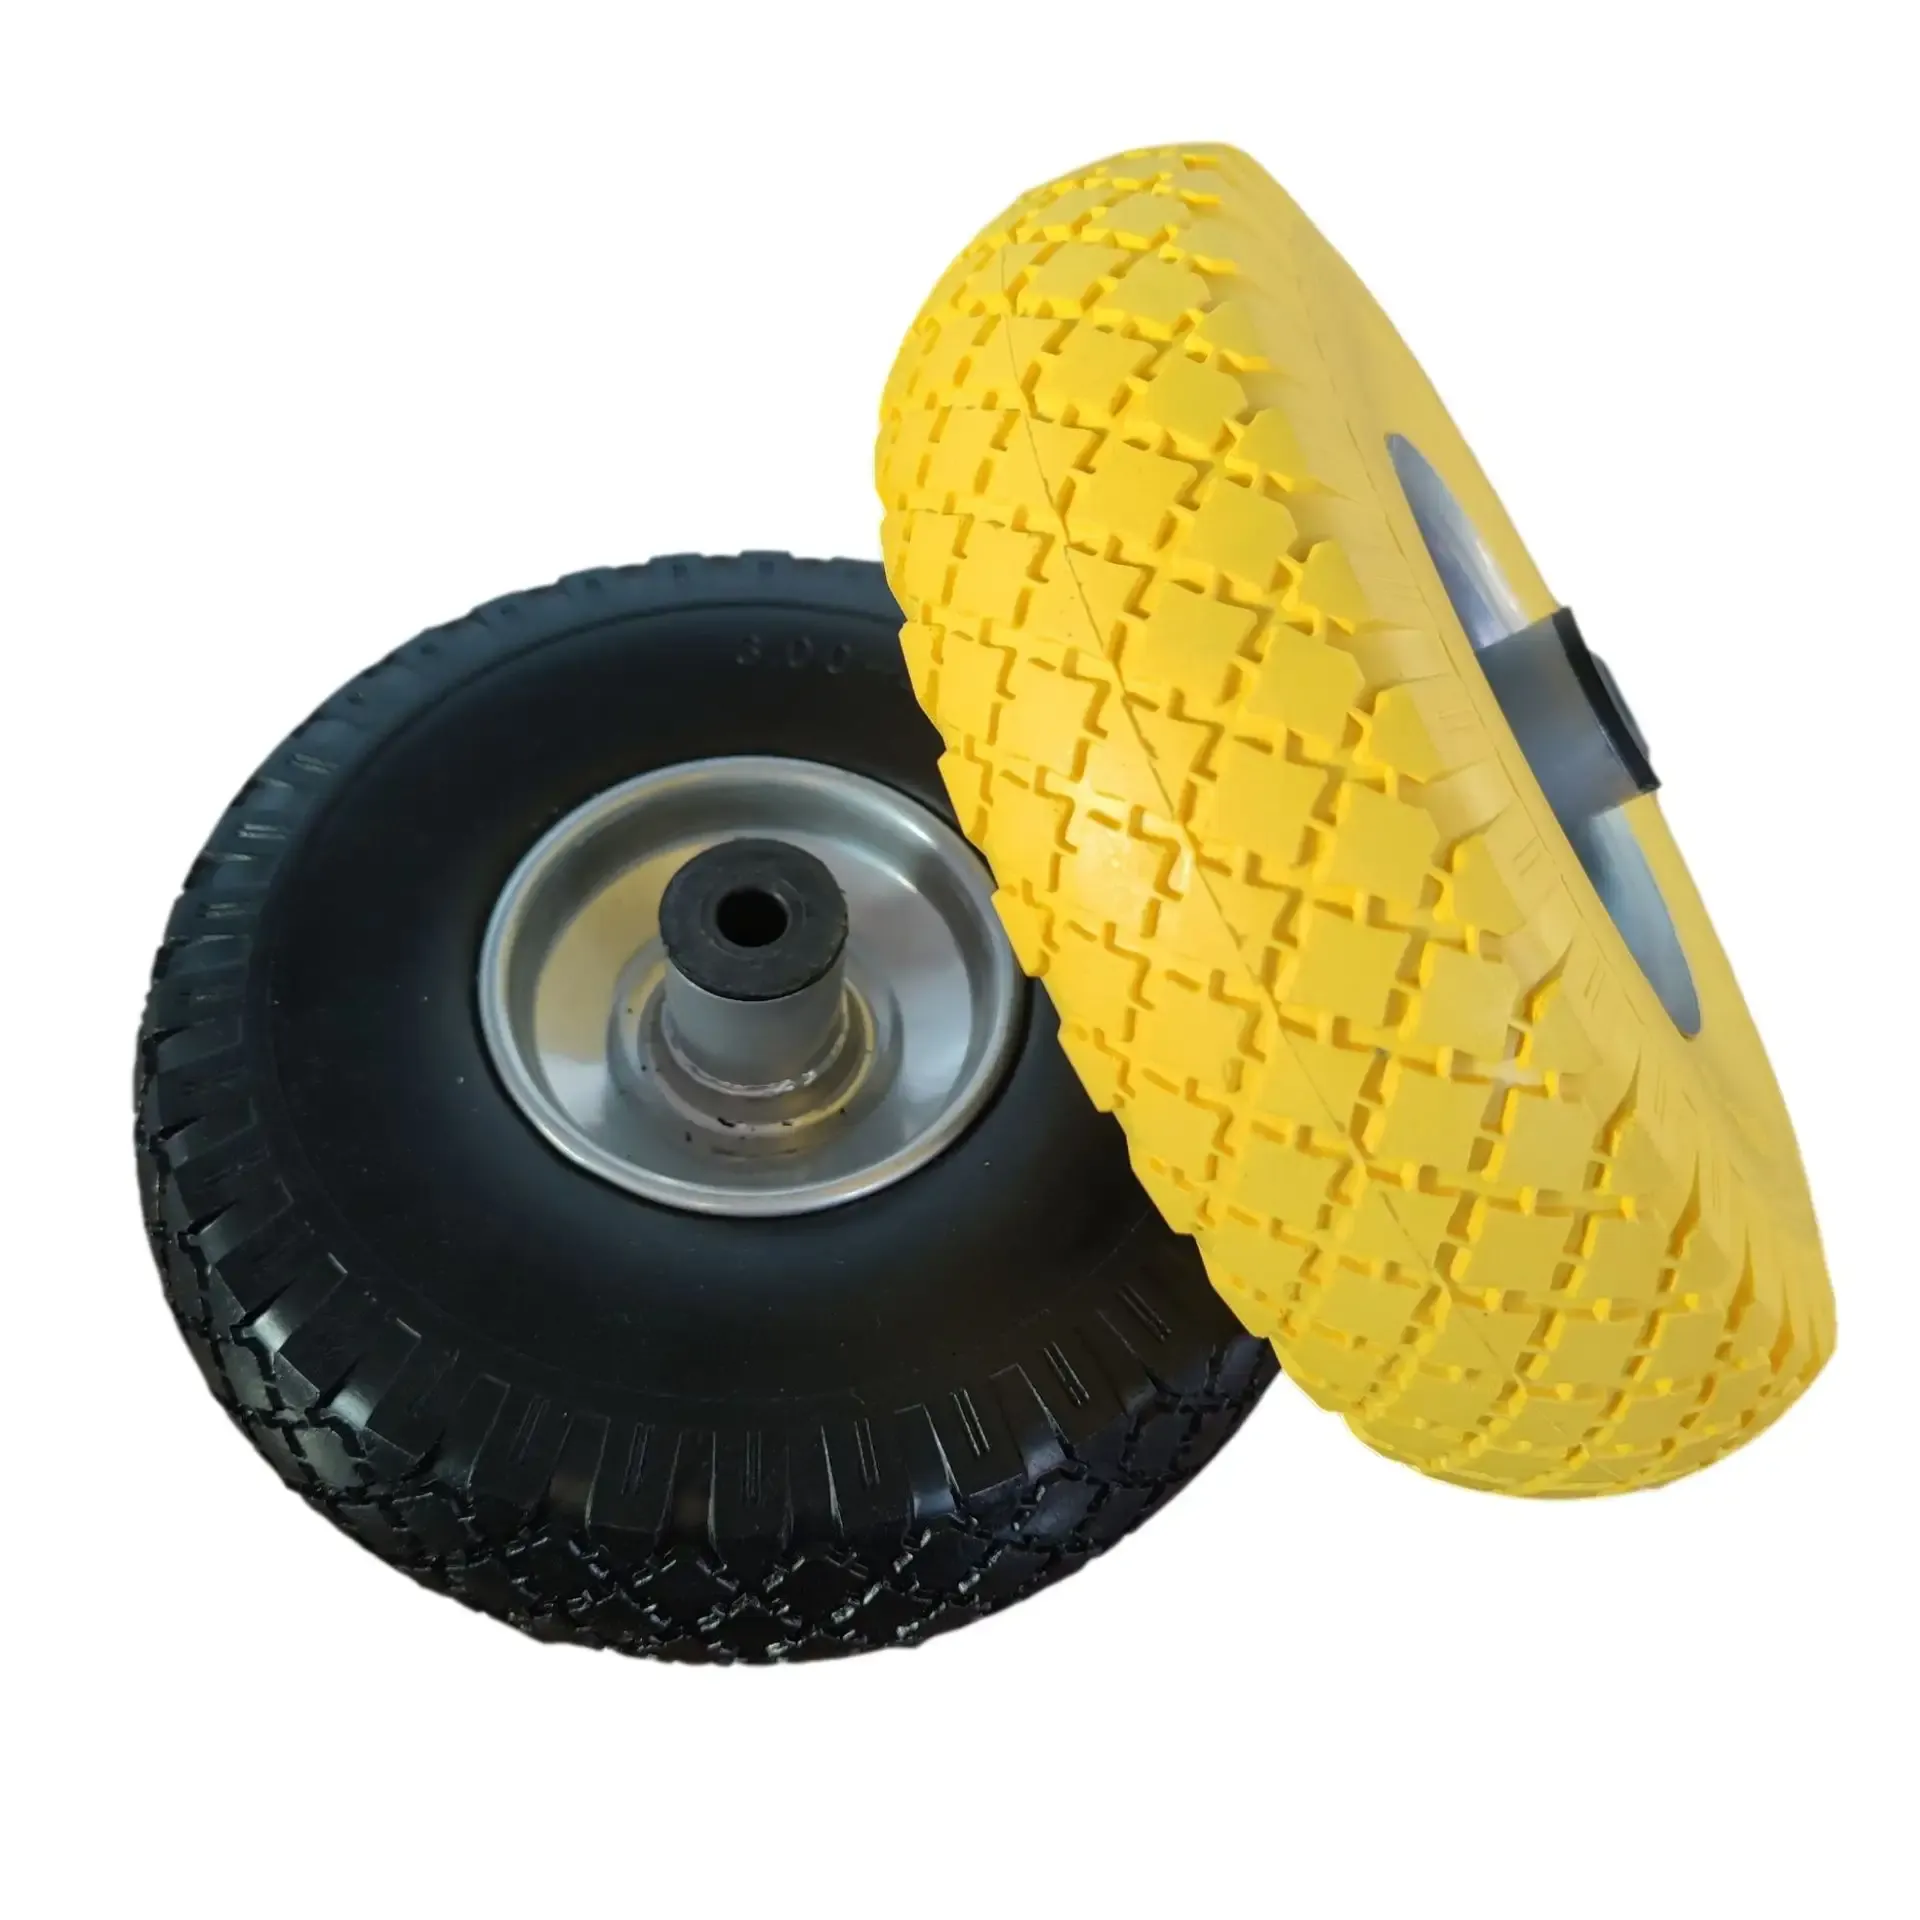 Bullcaster-pneumatic-caster-wheels